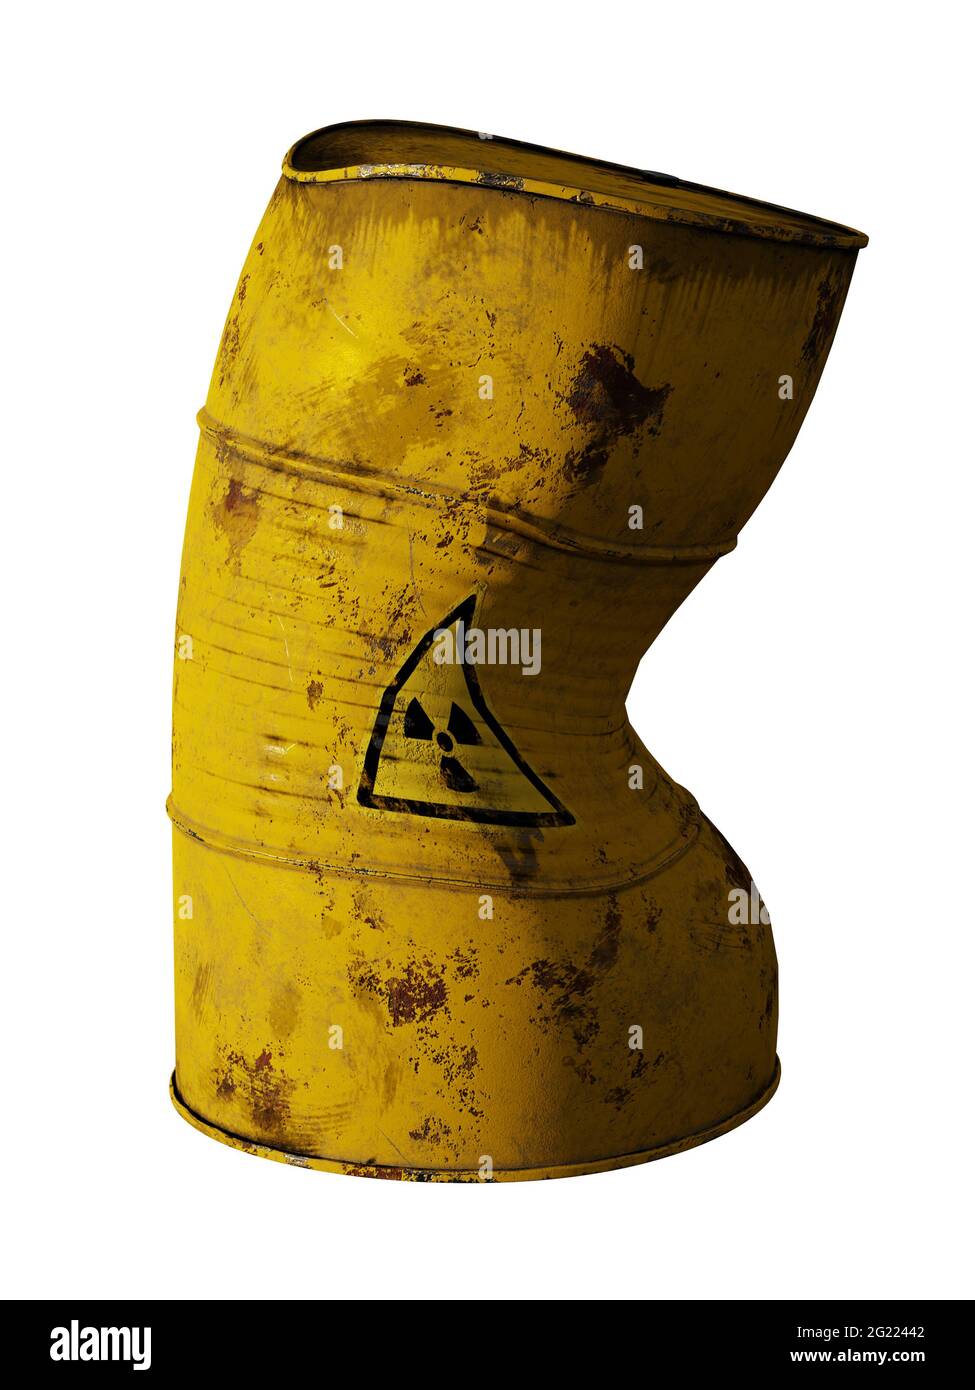 radioactive waste in damaged barrel, isolated on white background Stock Photo